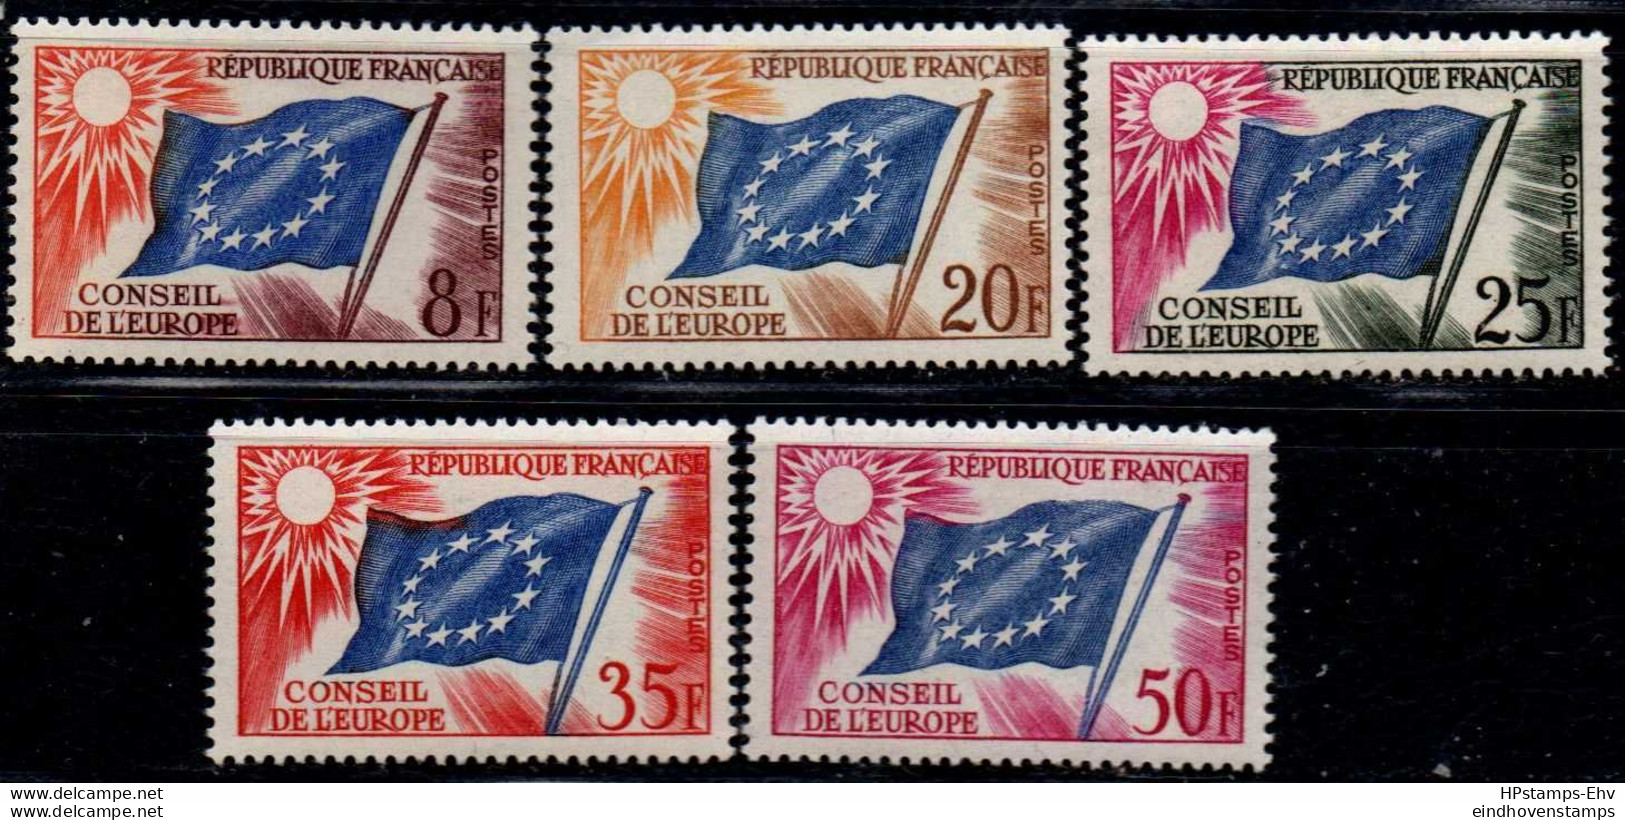 France 1958 Conseil De L'Europe, Flag Stamps 5 Values MNH 2209.2505 - 1958